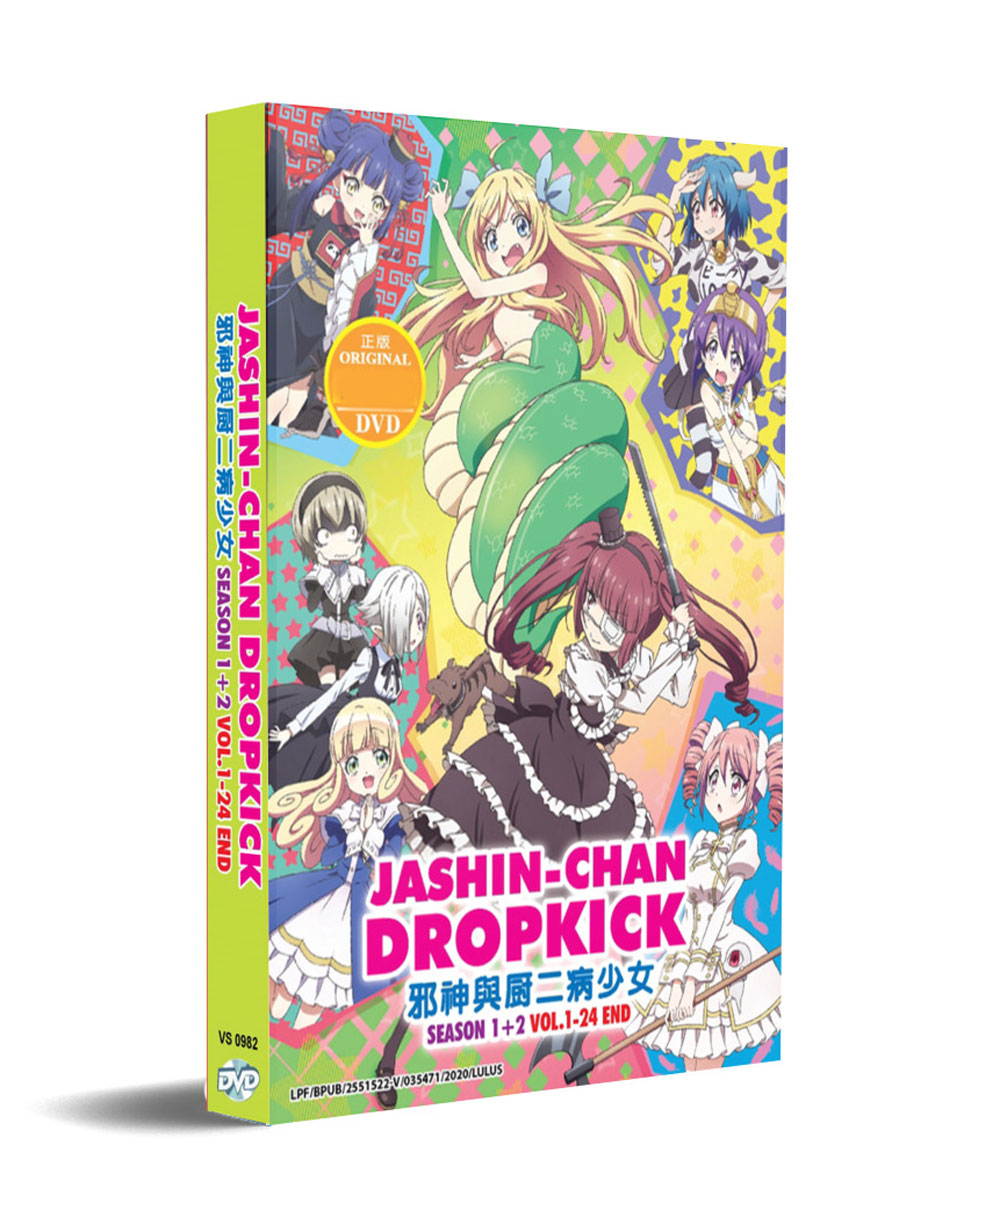 Jashin-chan Dropkick Season 1+2 (DVD) (2018-2020) Anime